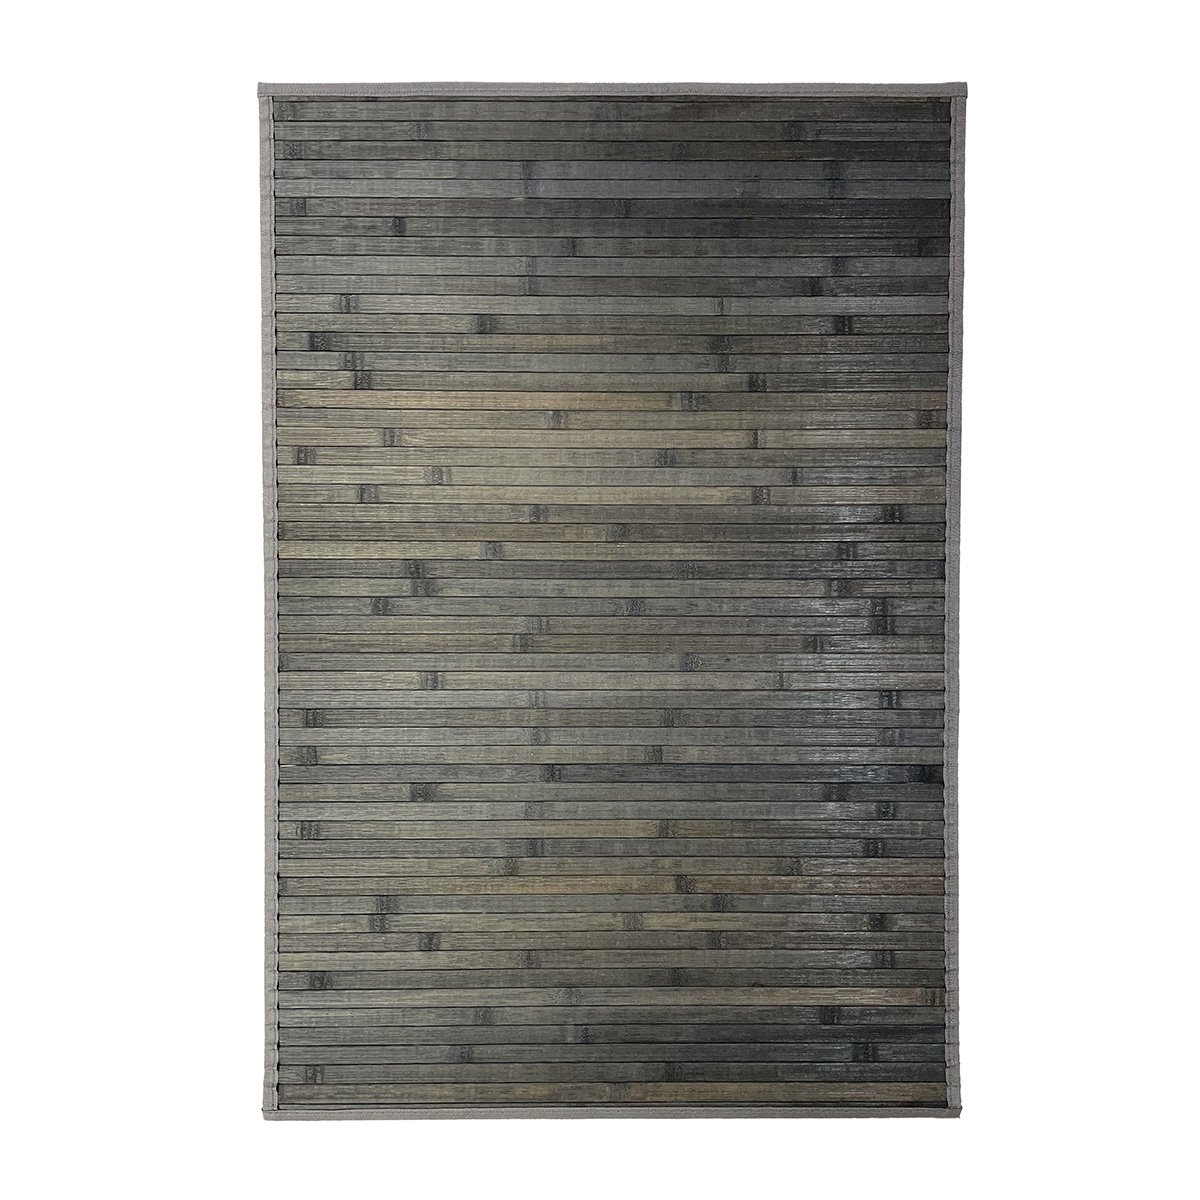 Alfombra bambu japones • AO tienda online alfombras